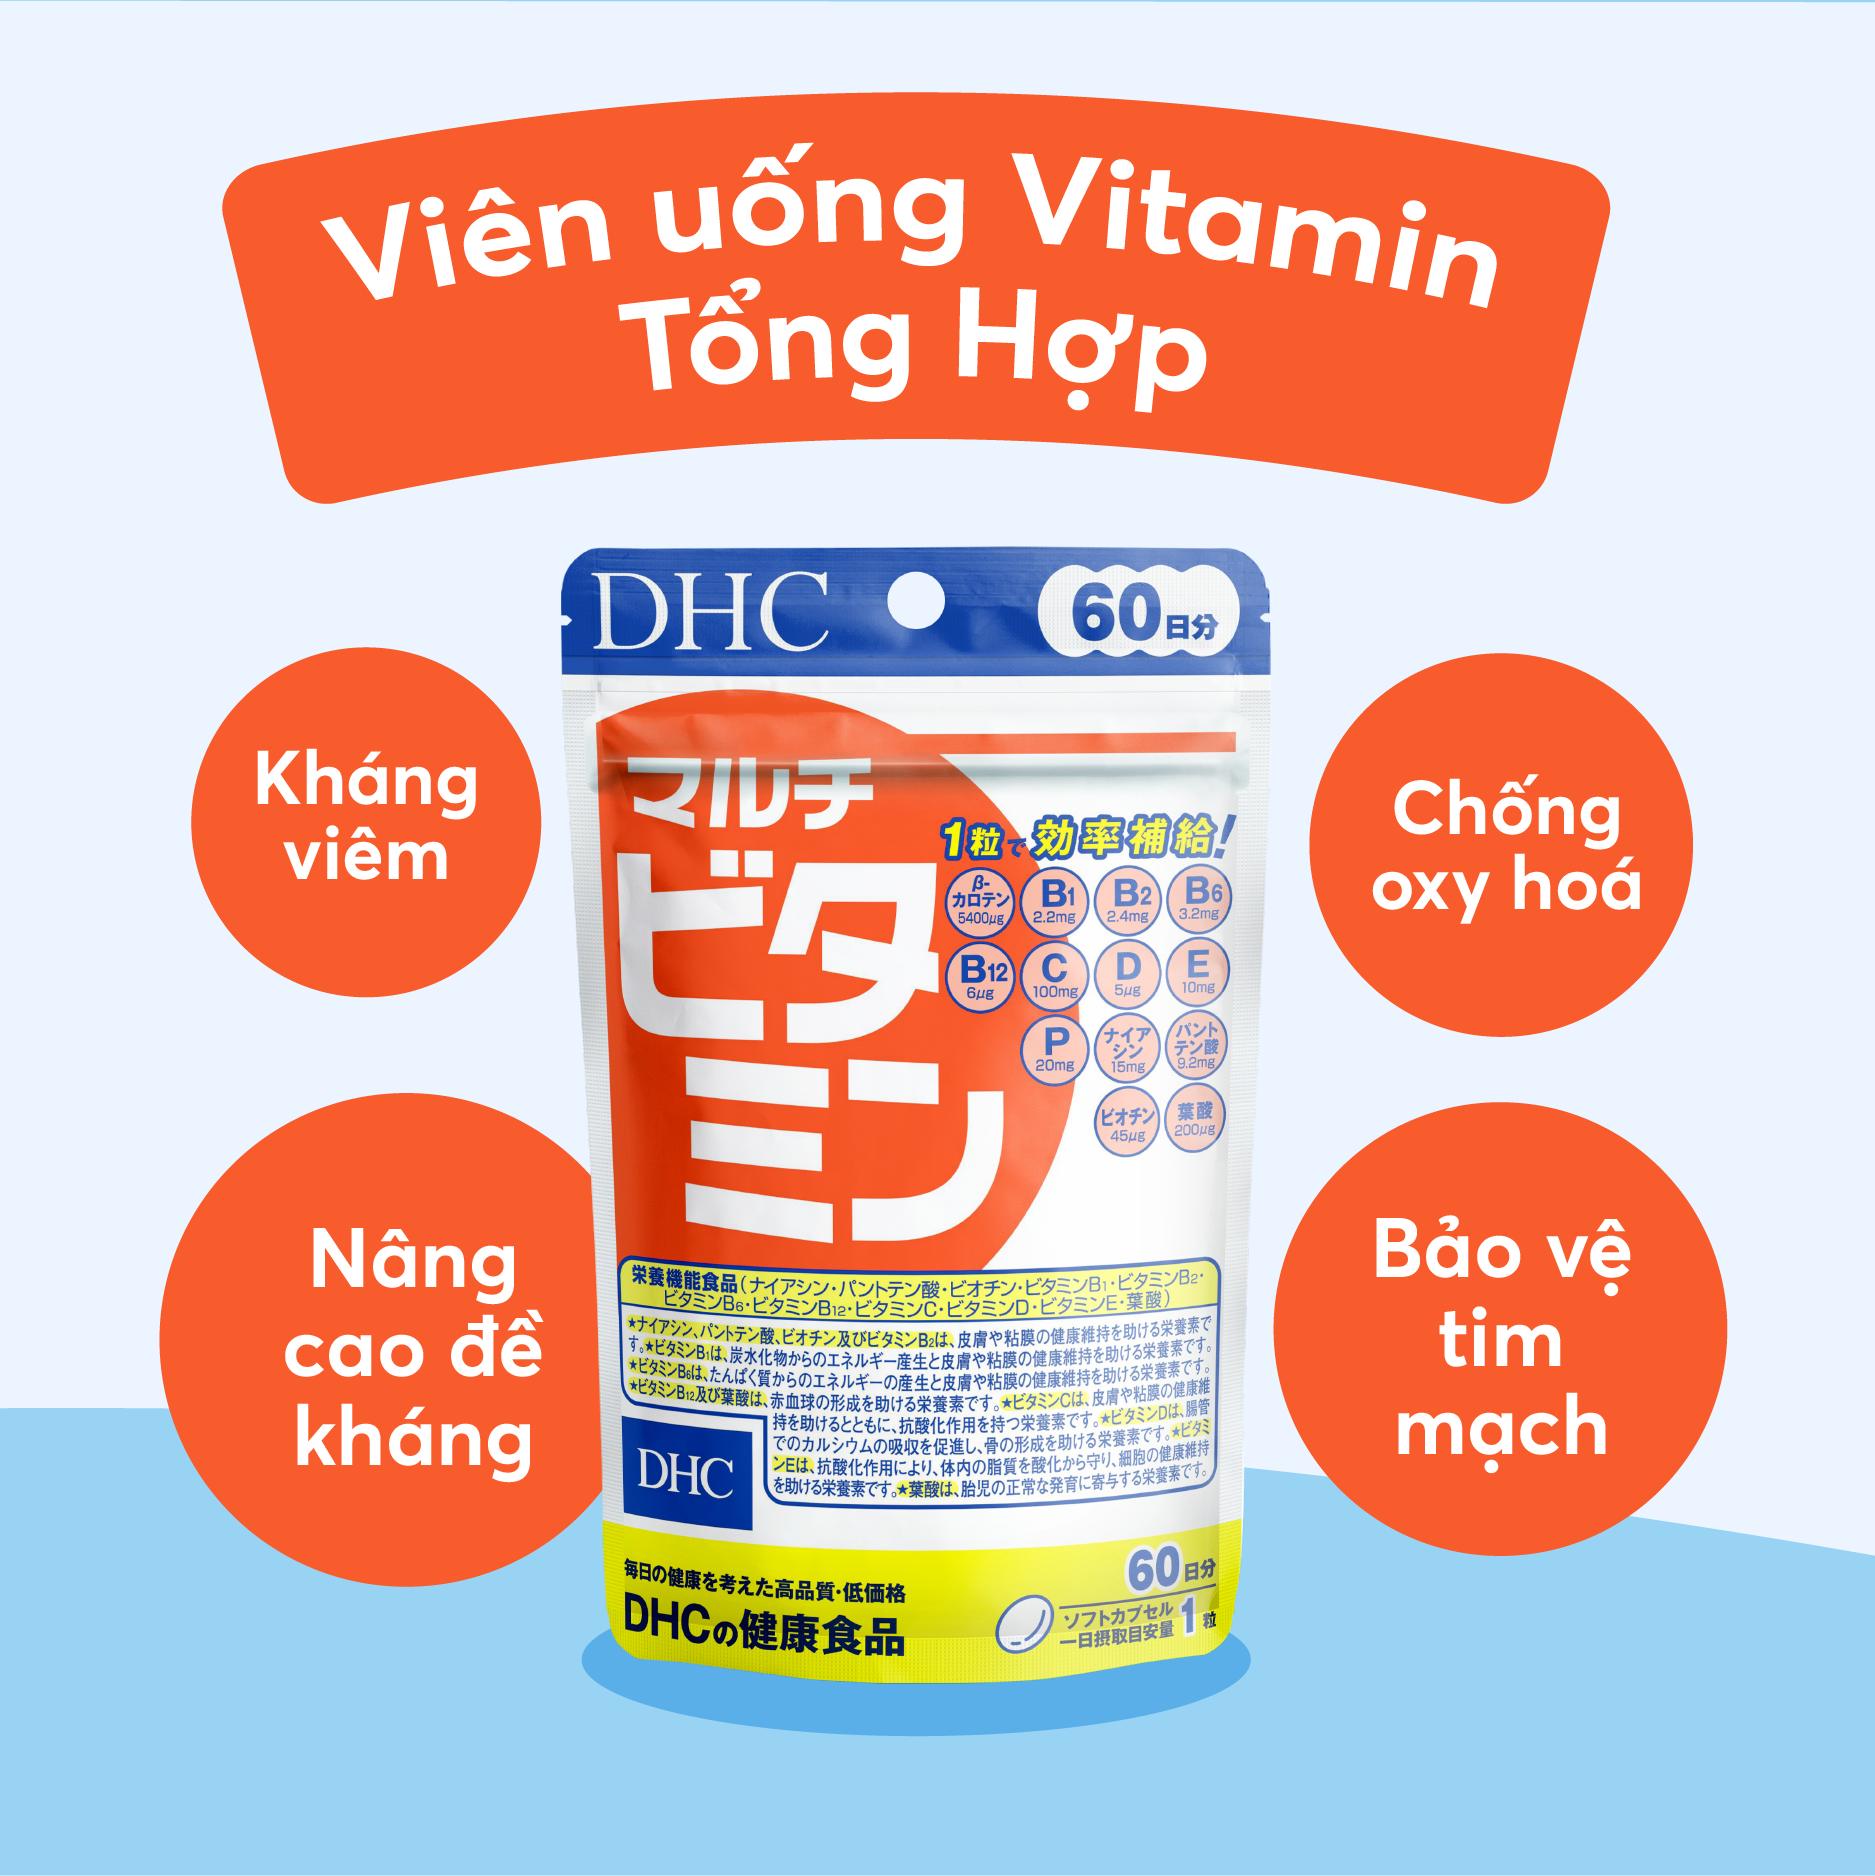 Viên Uống Vitamin Tổng Hợp DHC Multi Vitamin 90 Ngày Bao Bì Mới